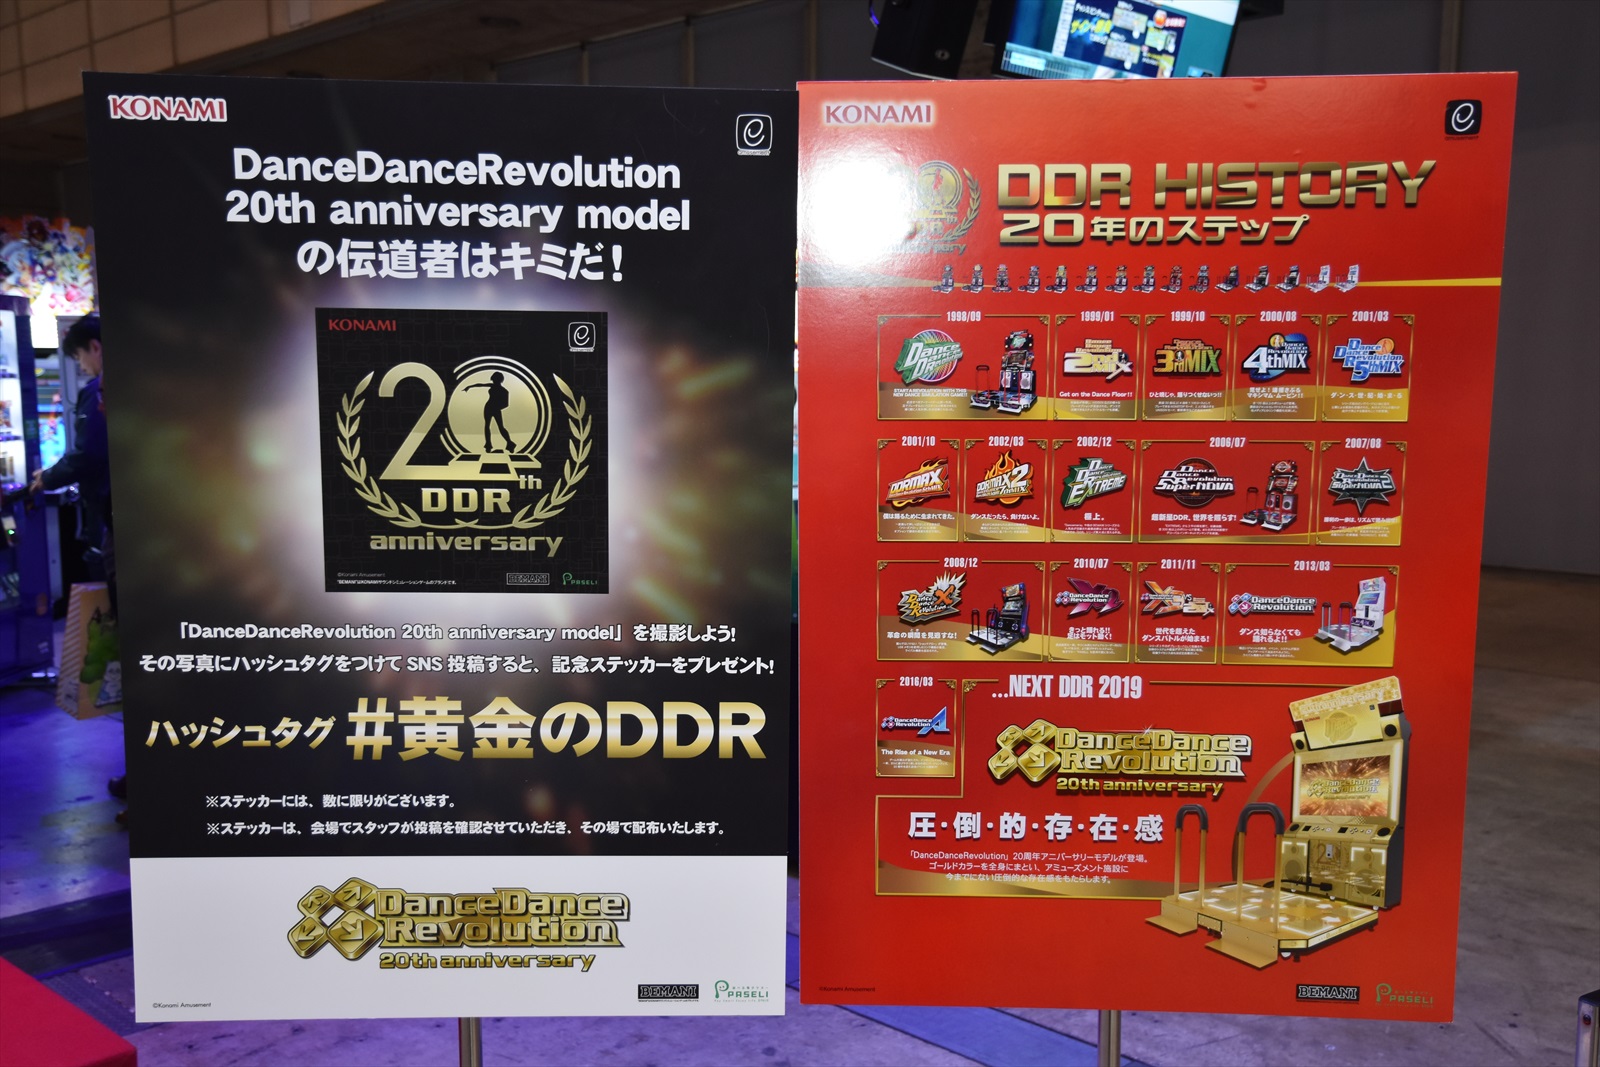 金光闪瞎眼 科乐美跳舞机名作《DDR》推出20周年黄金版框体